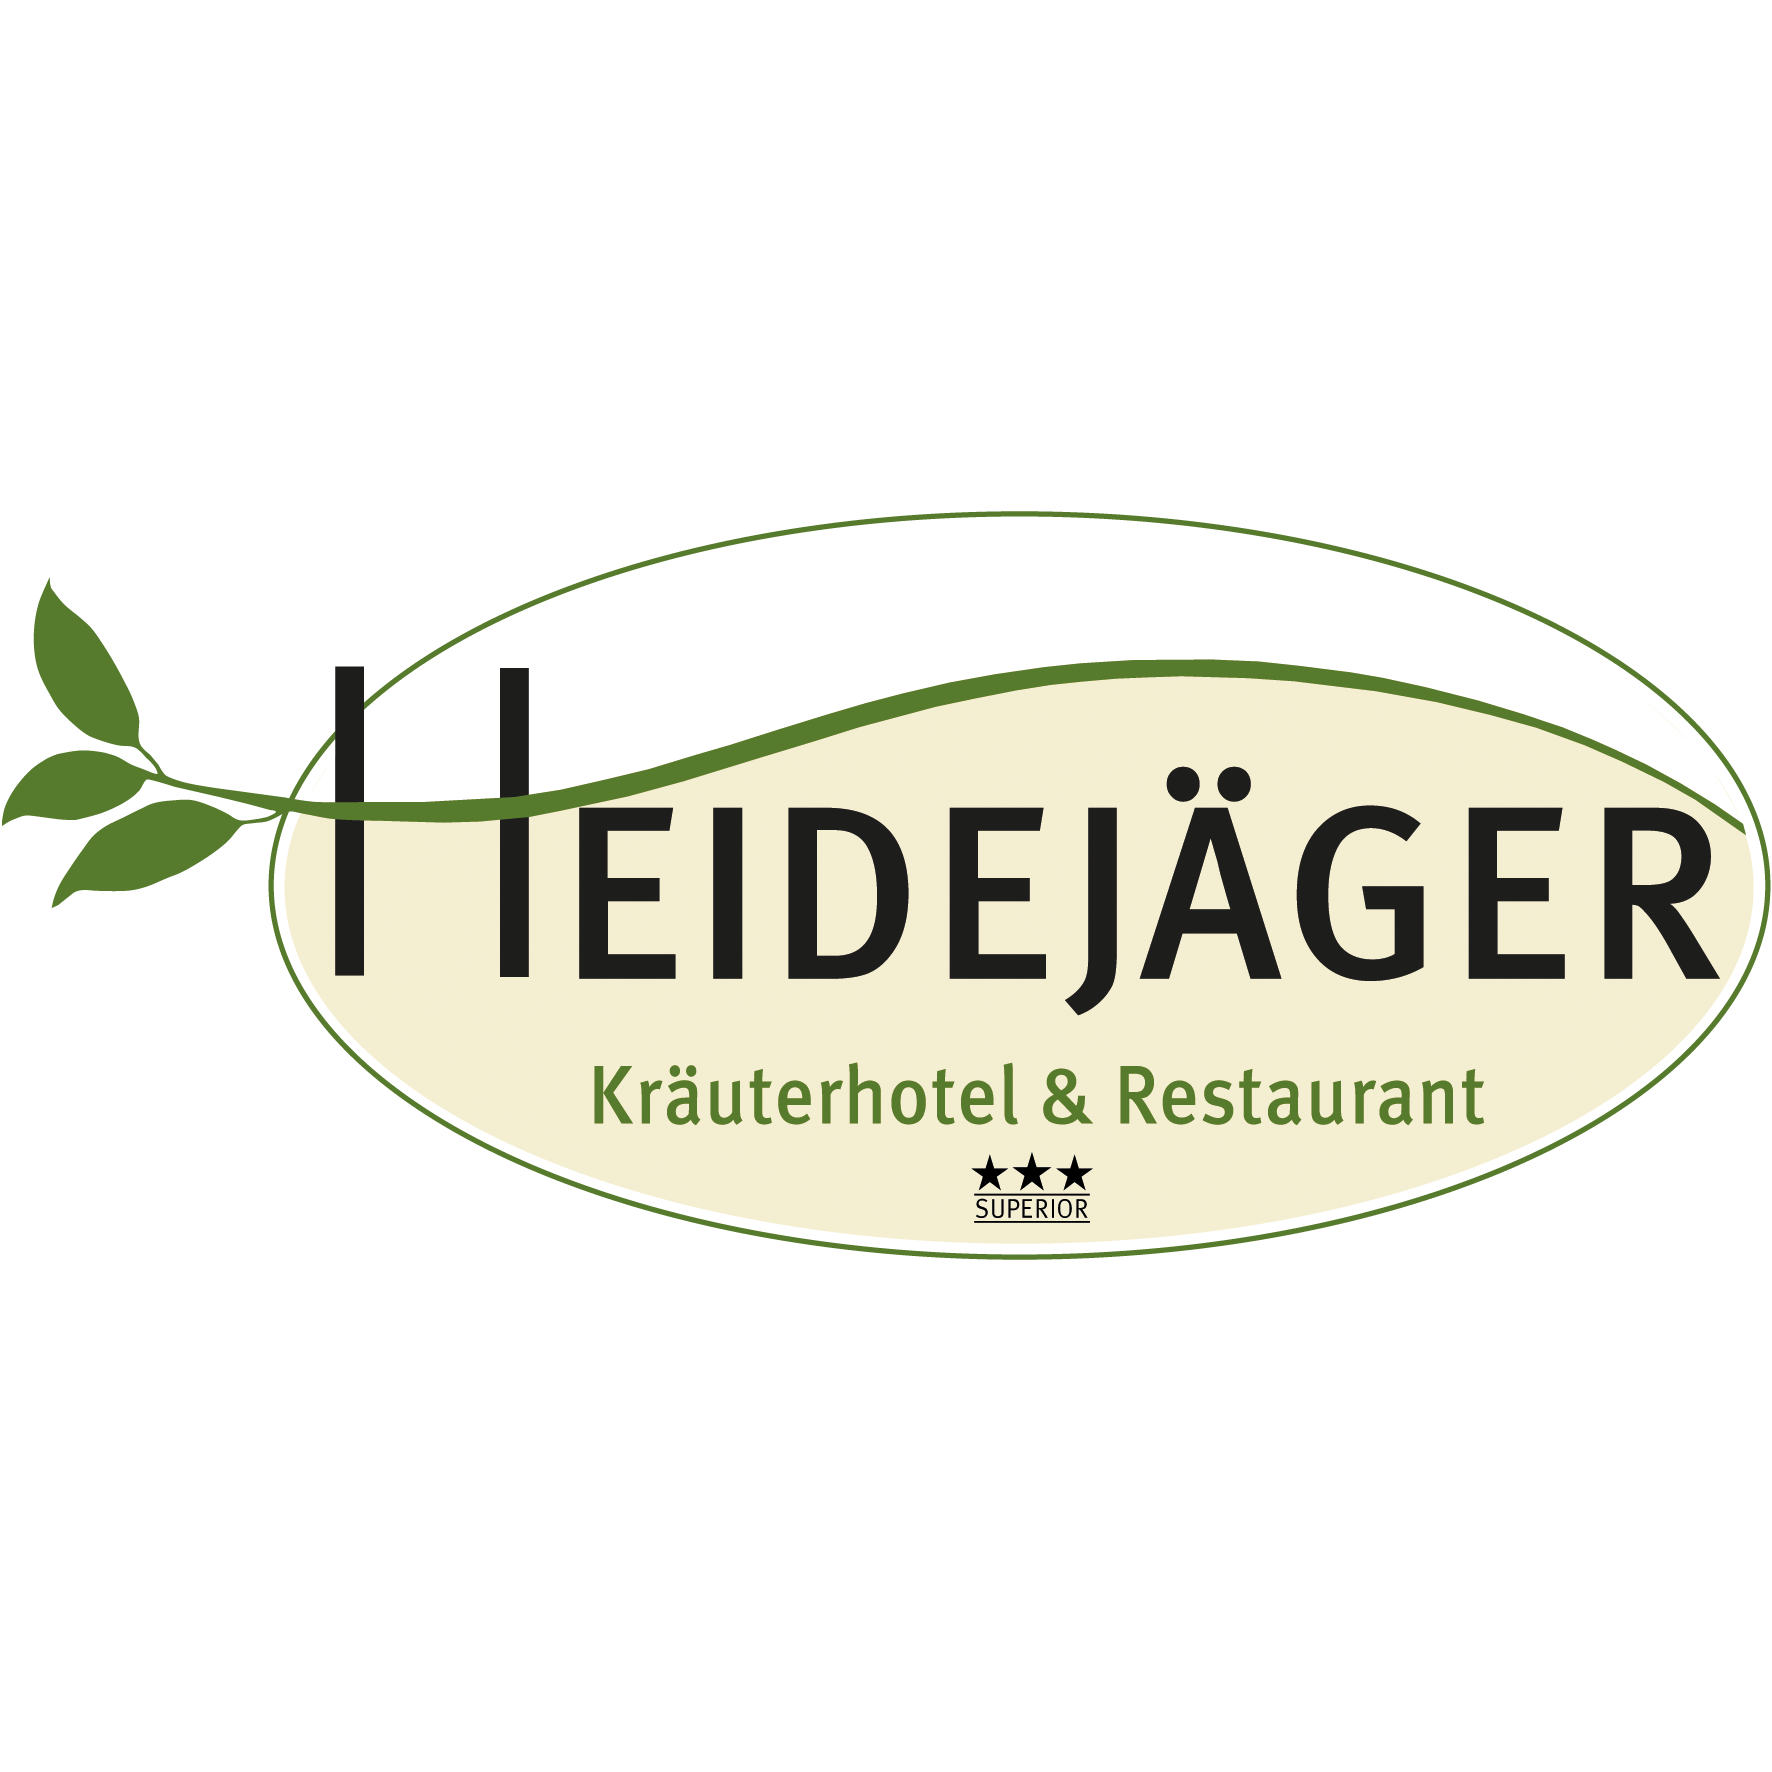 Kräuterhotel & Restaurant Heidejäger Logo